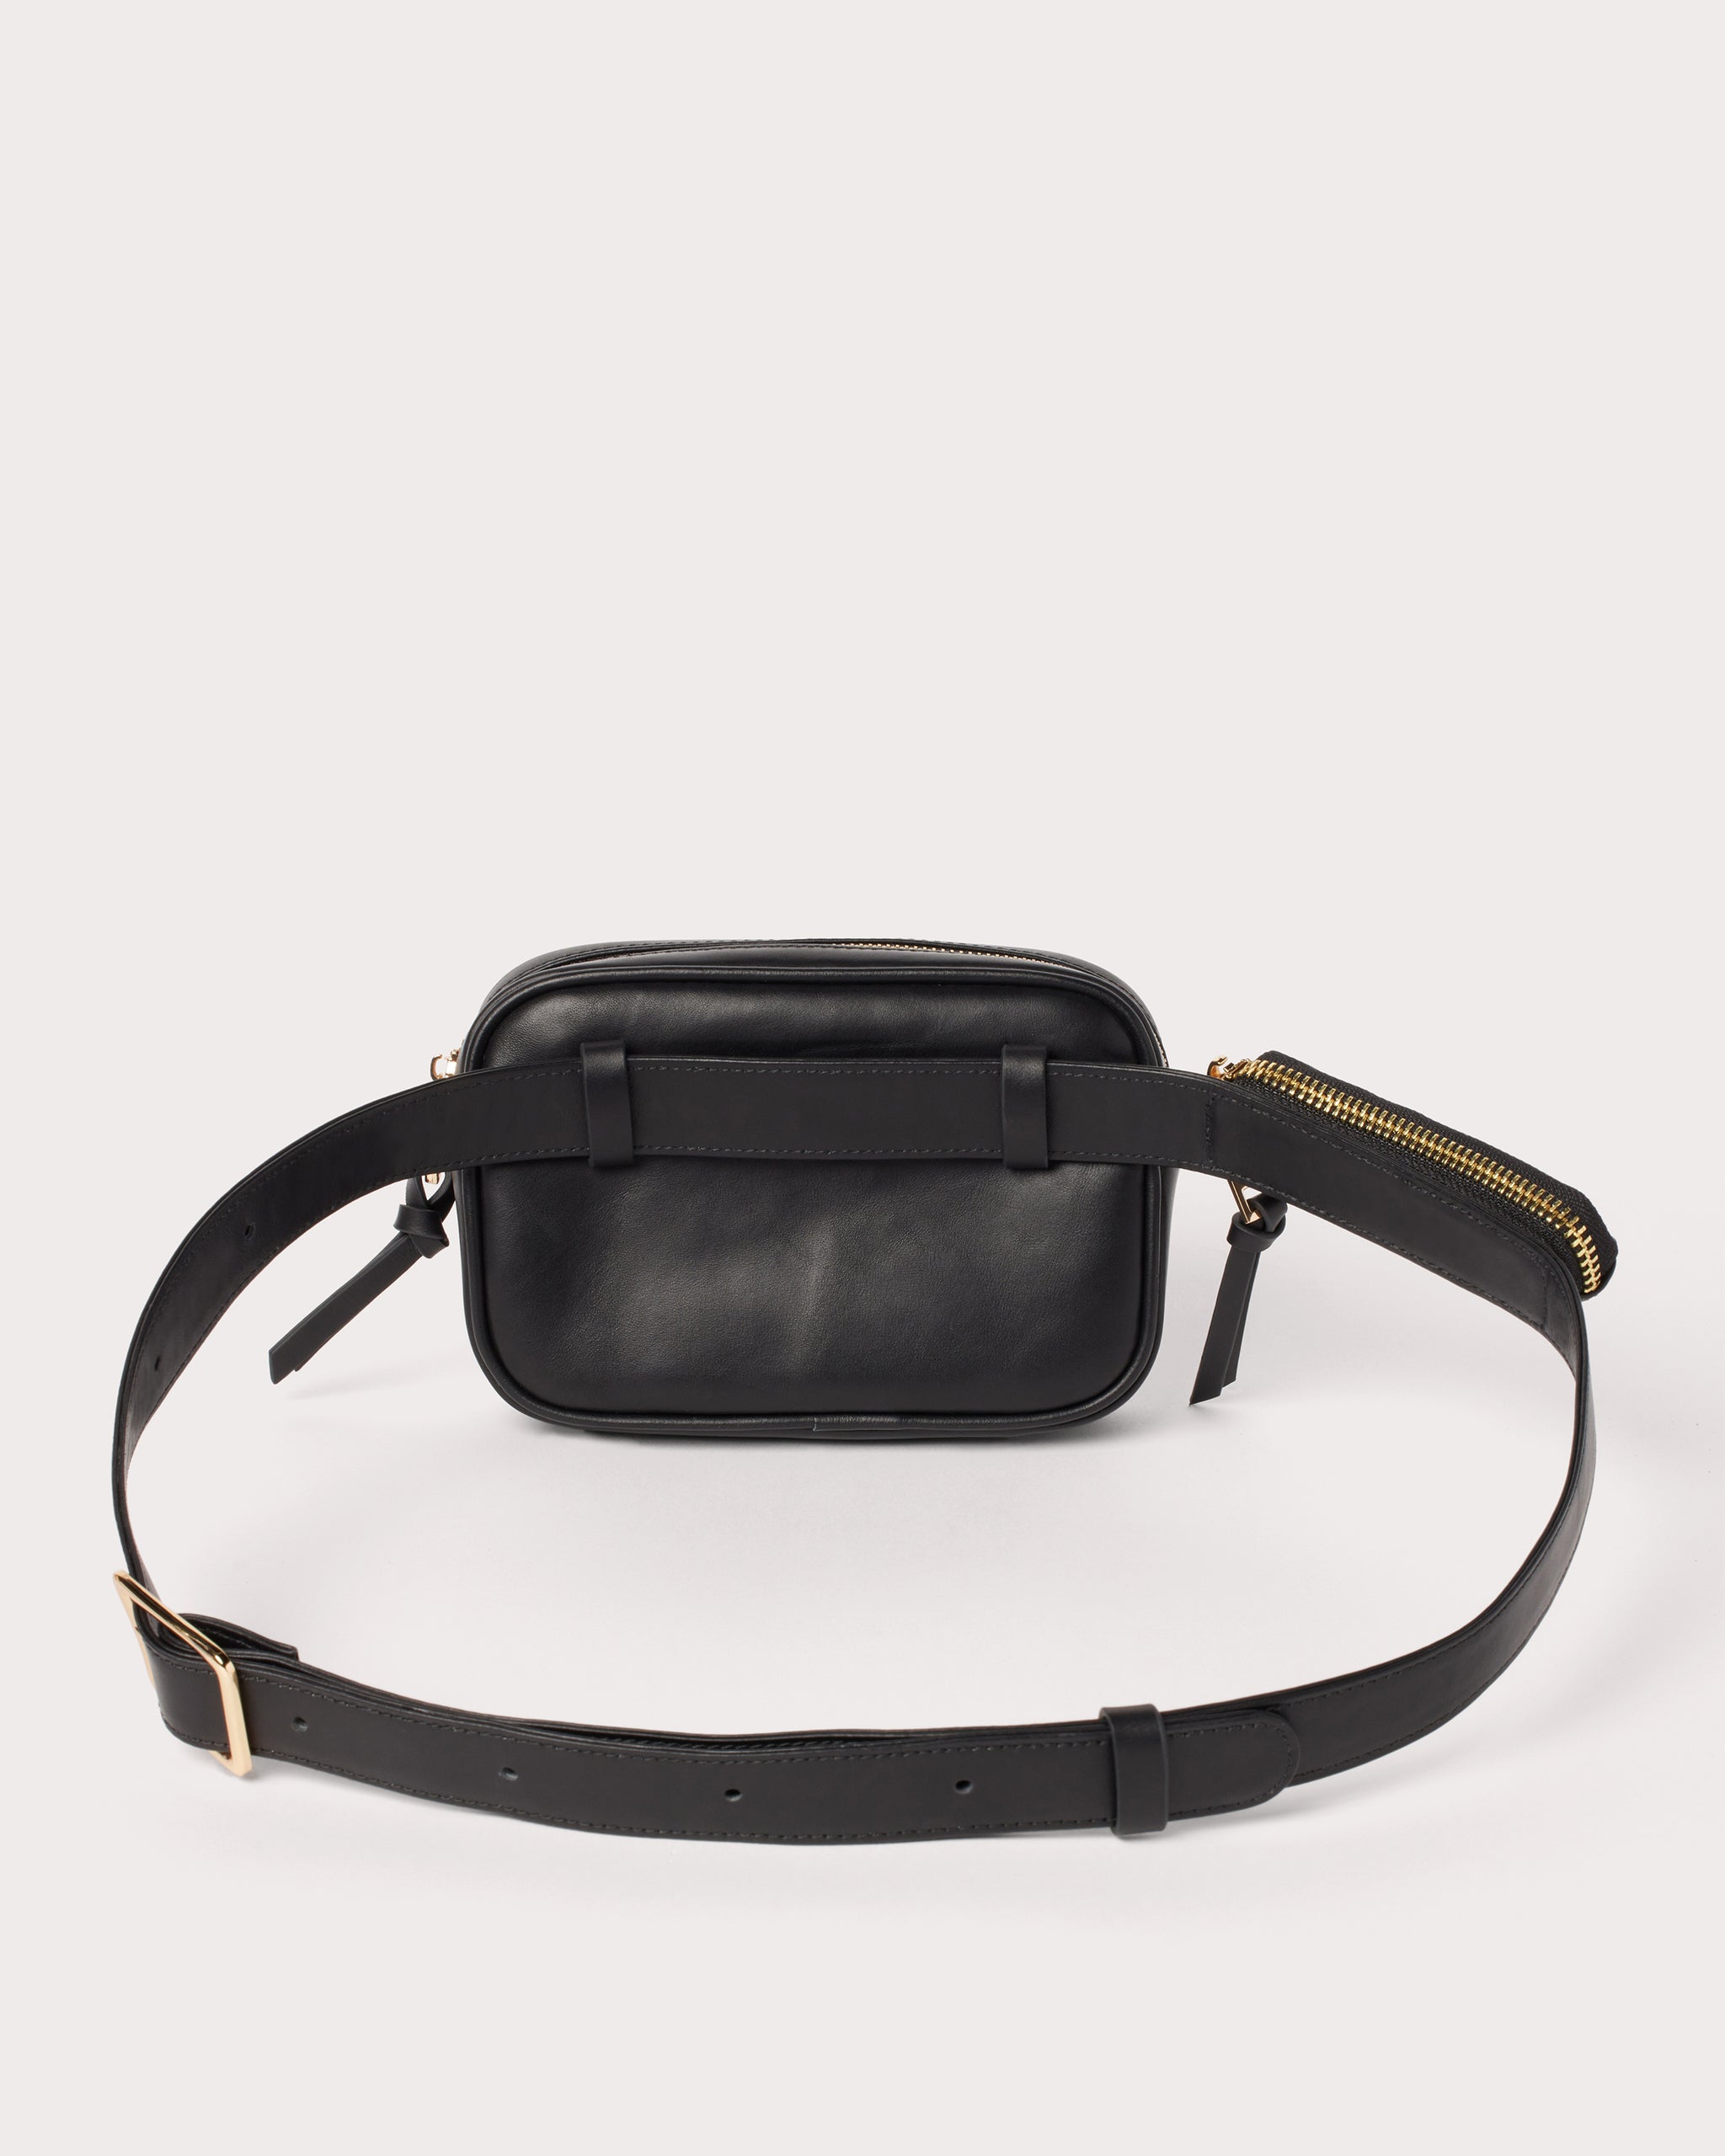 Black Leather Sling Bag \Bum Bag, Fanny Pack